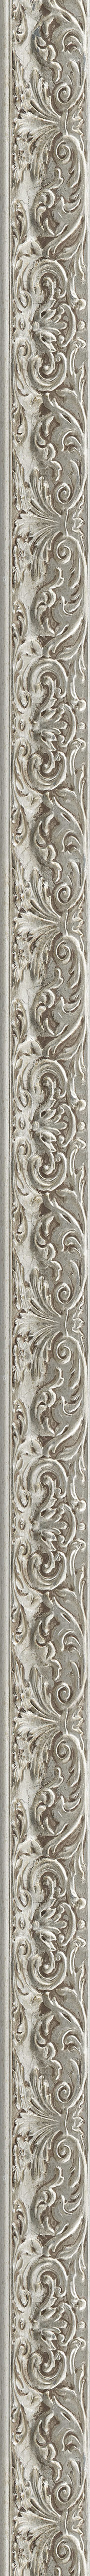 Elegant silver leaf frame frame